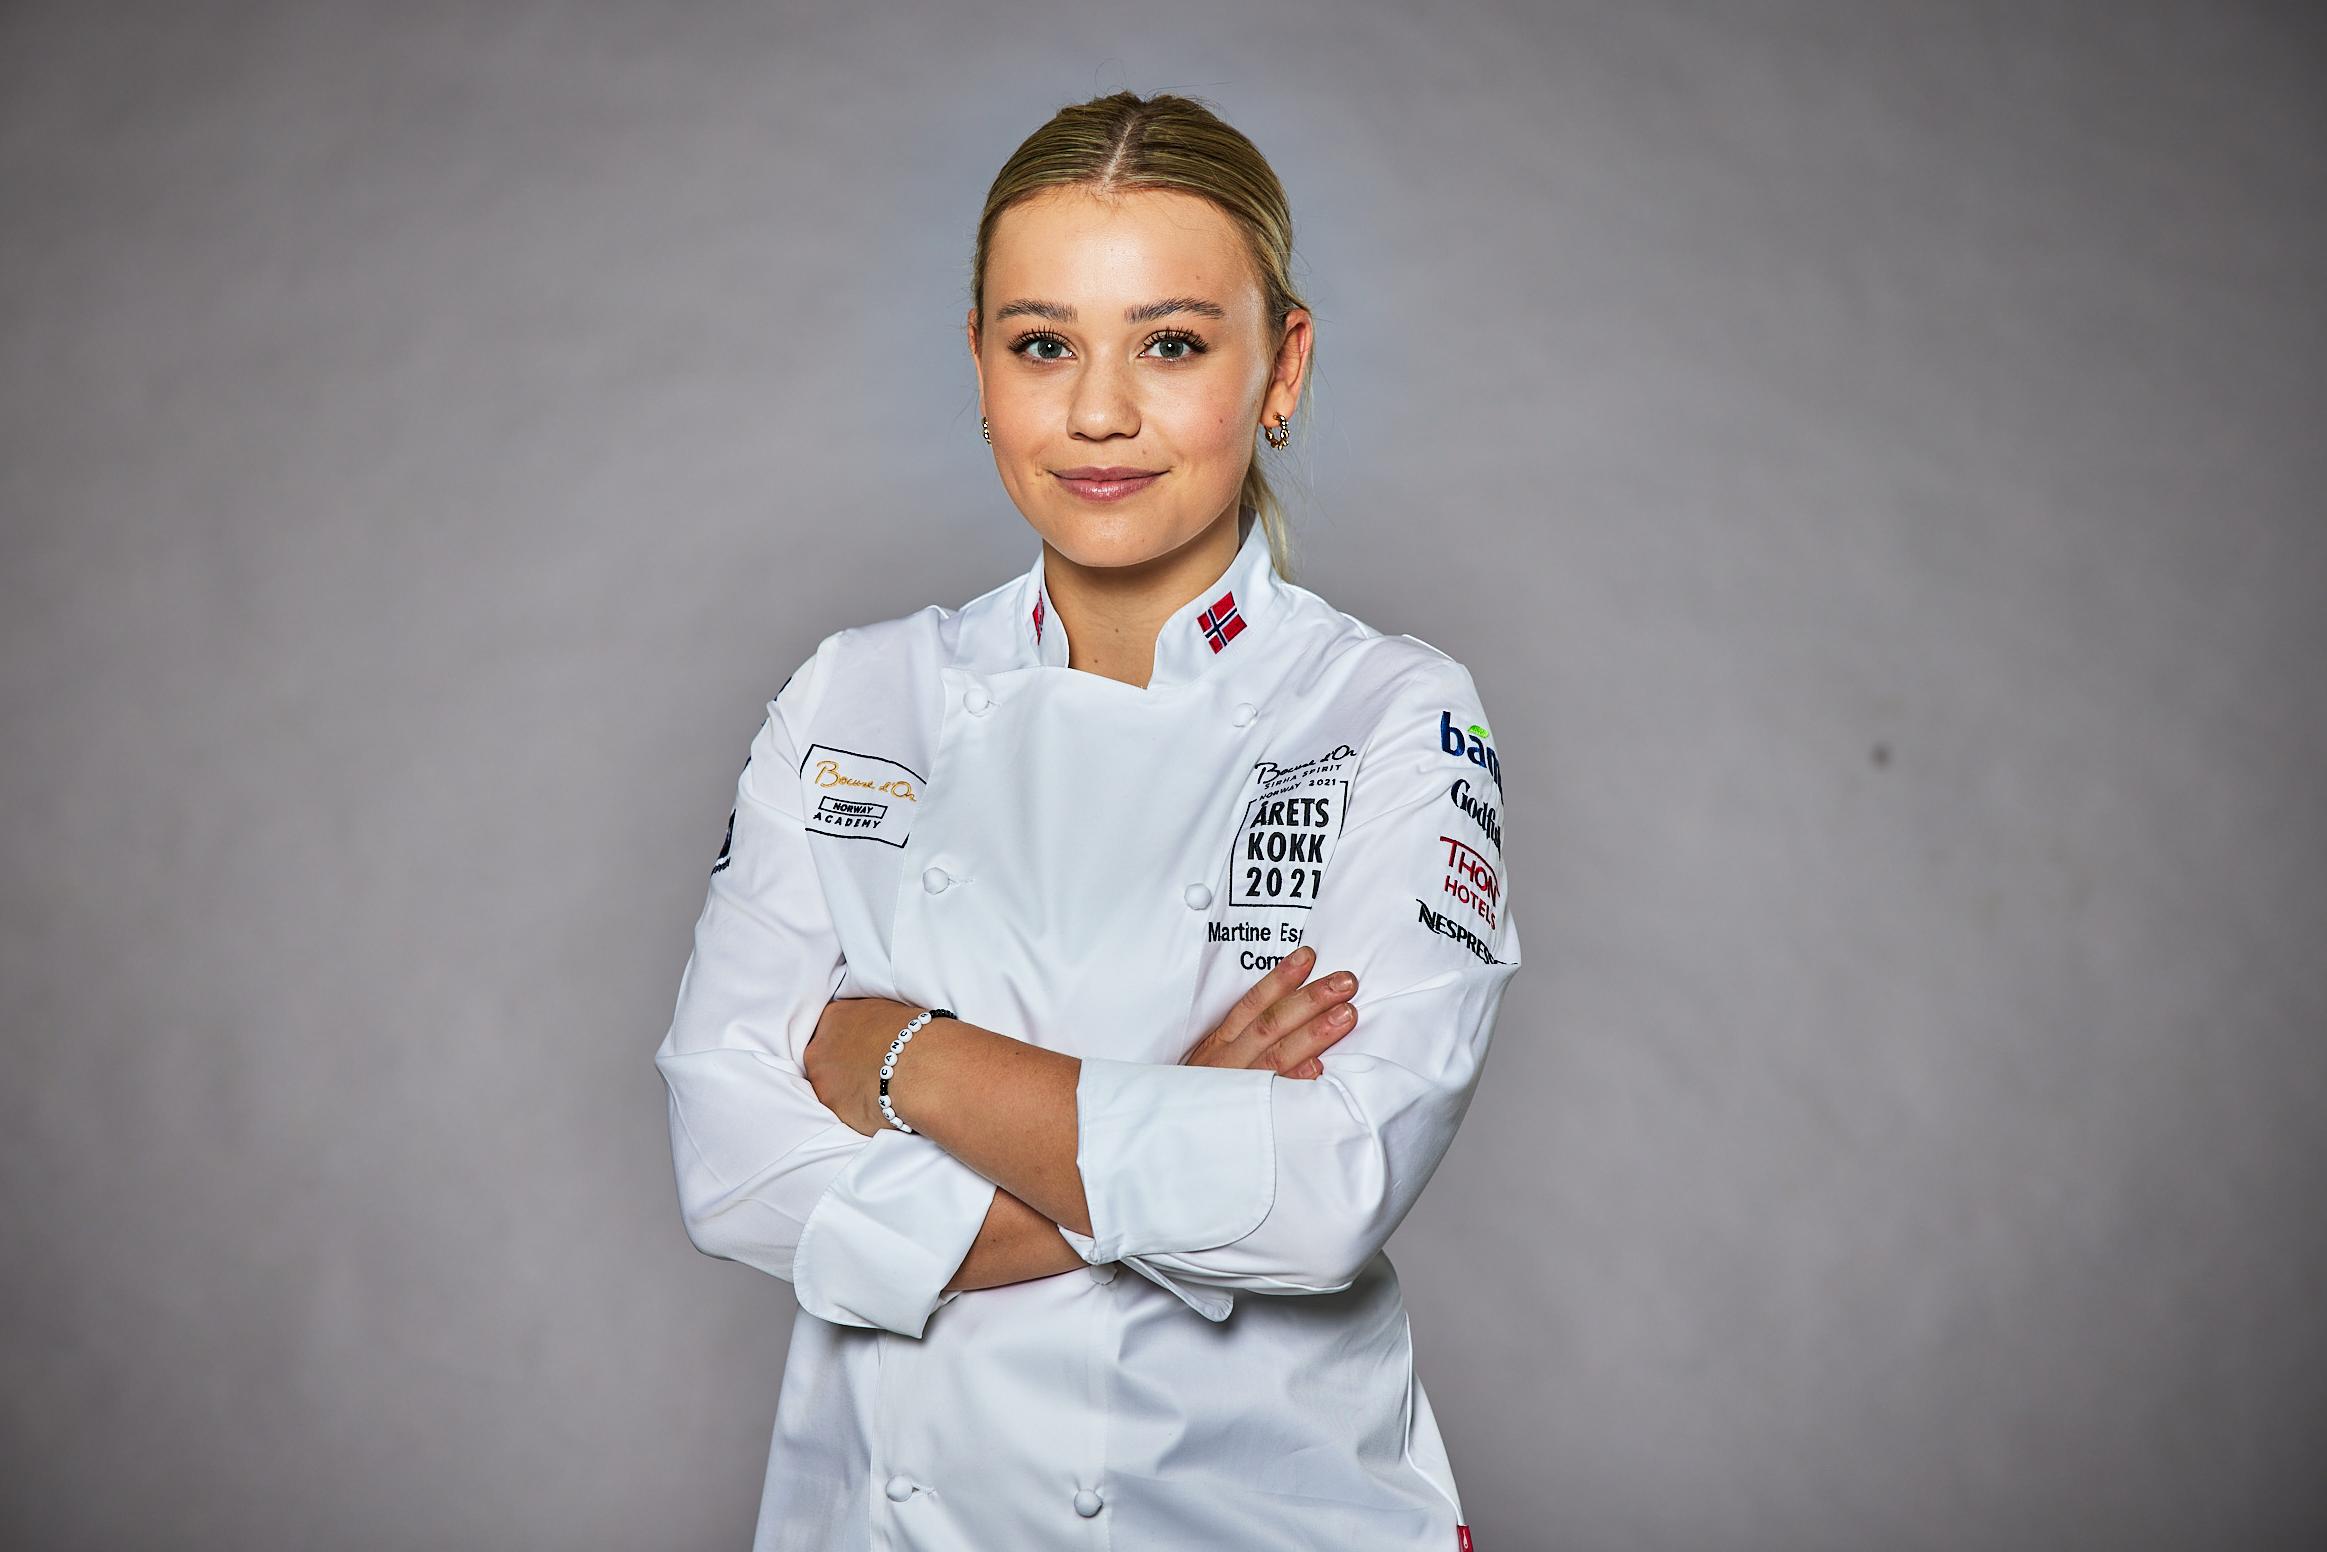 UNG KOKK: Martine Espeland skal snart representere Norge i kokke-VM, bare 22 år gammel. 